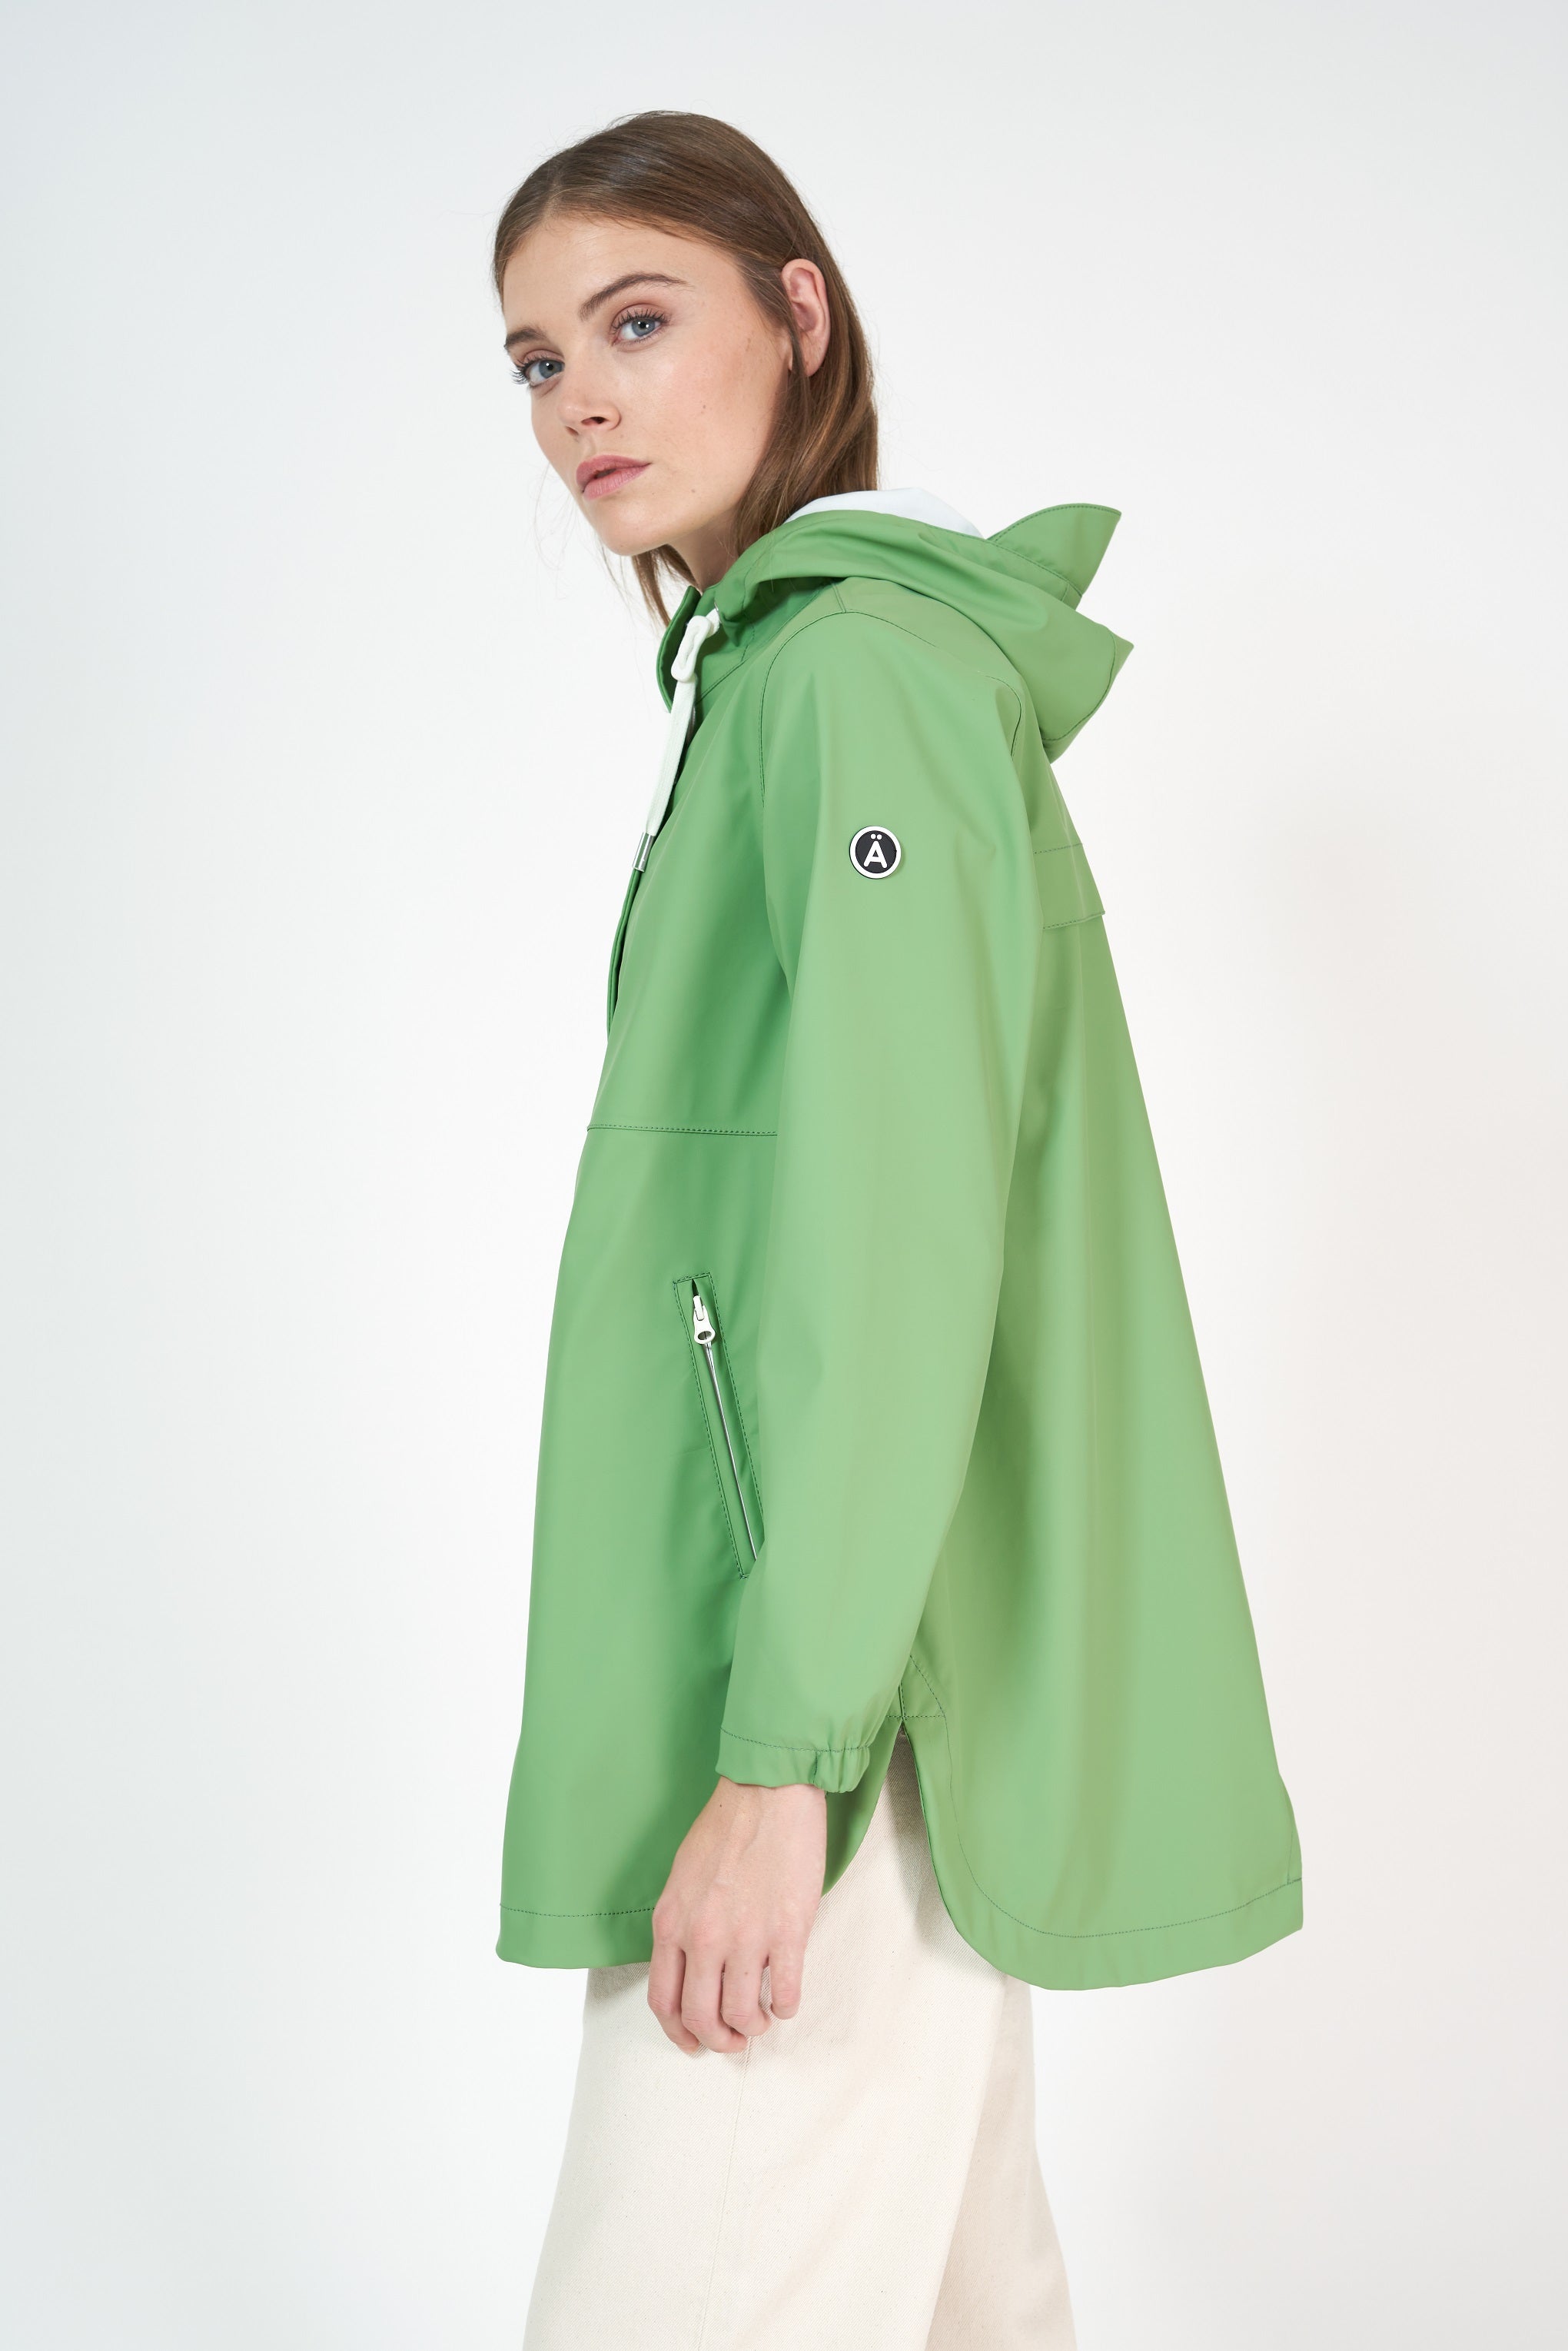 Waterproof Jacket Nuage - Turf Green